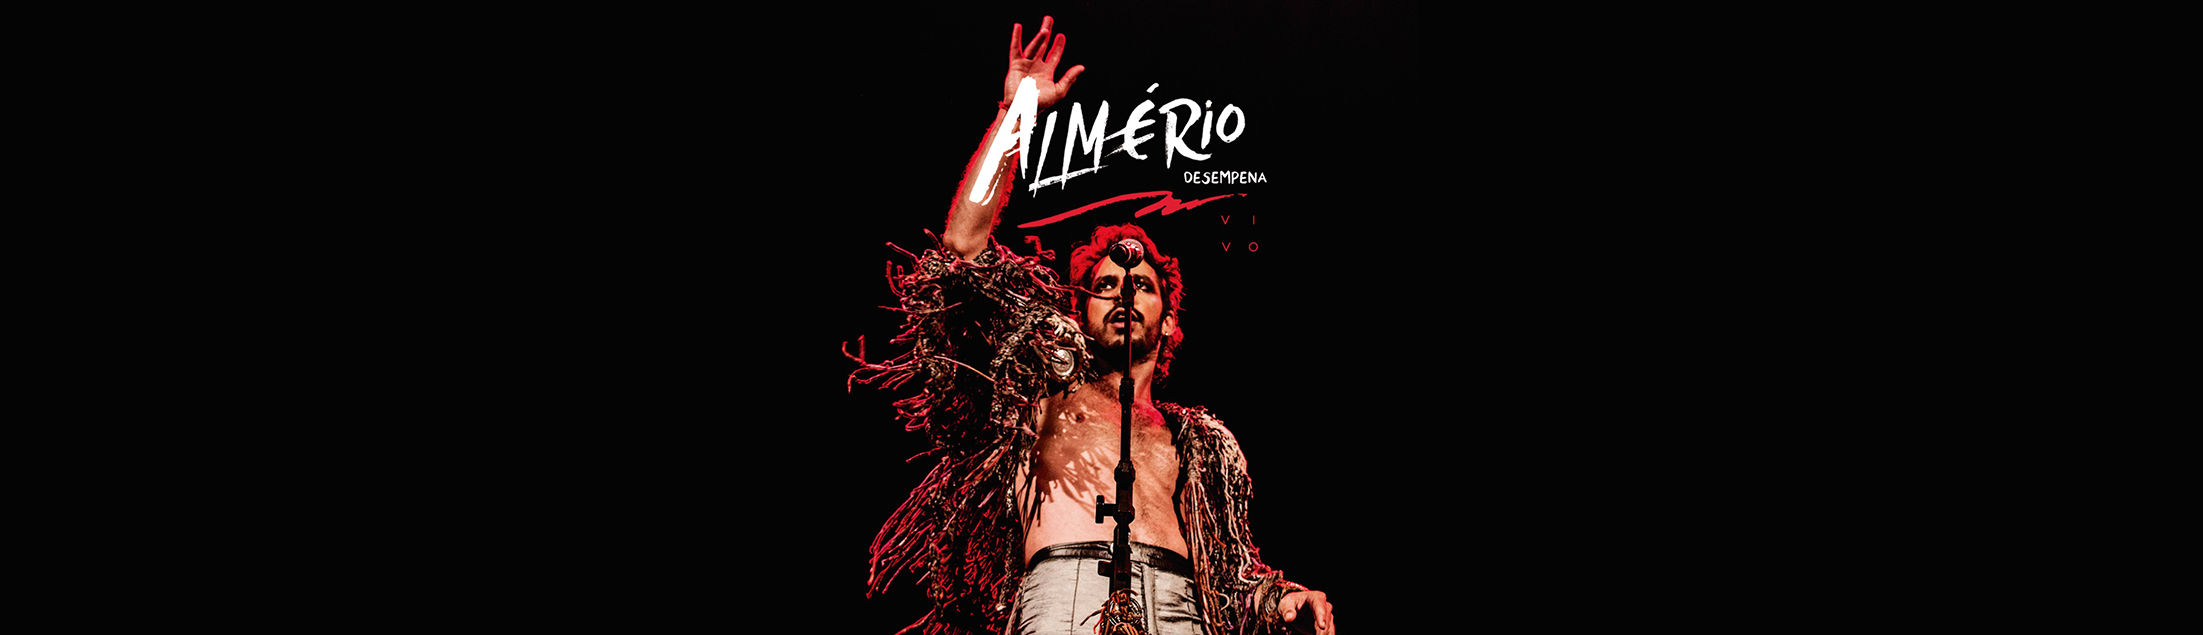 Almério lança o álbum 'Desempena VIVO'